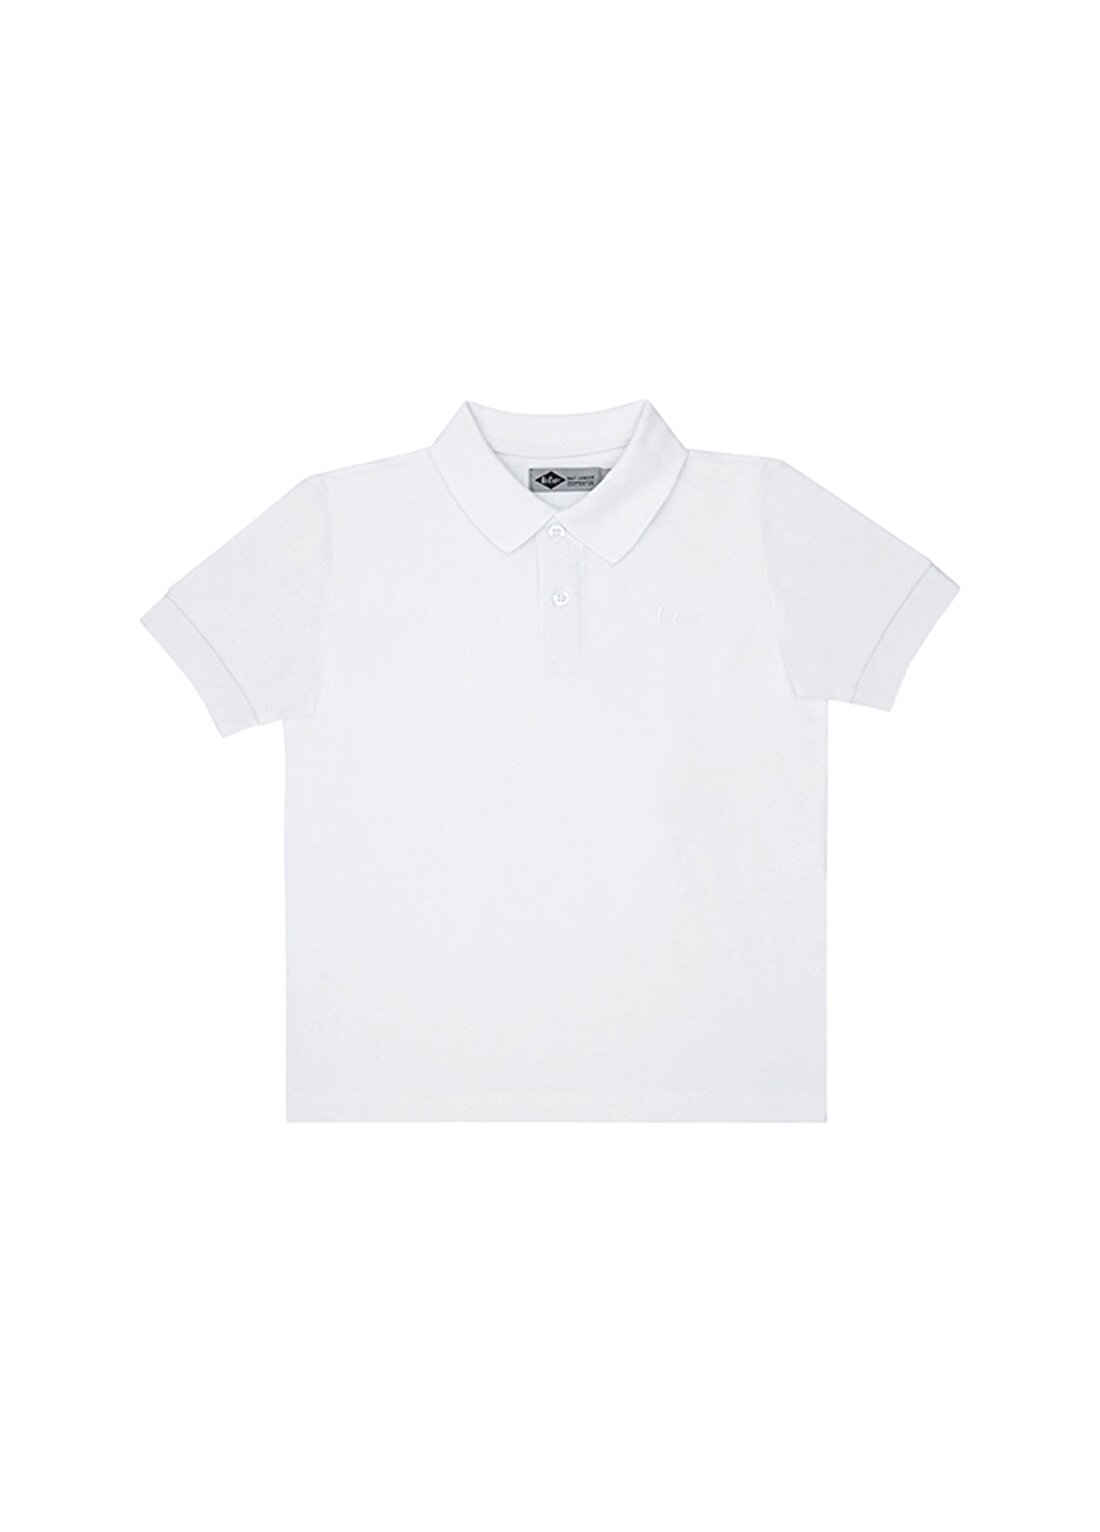 Lee Cooper Düz Beyaz Erkek Çocuk Polo T-Shirt 202 LCB 242011 TWINS BEYAZ